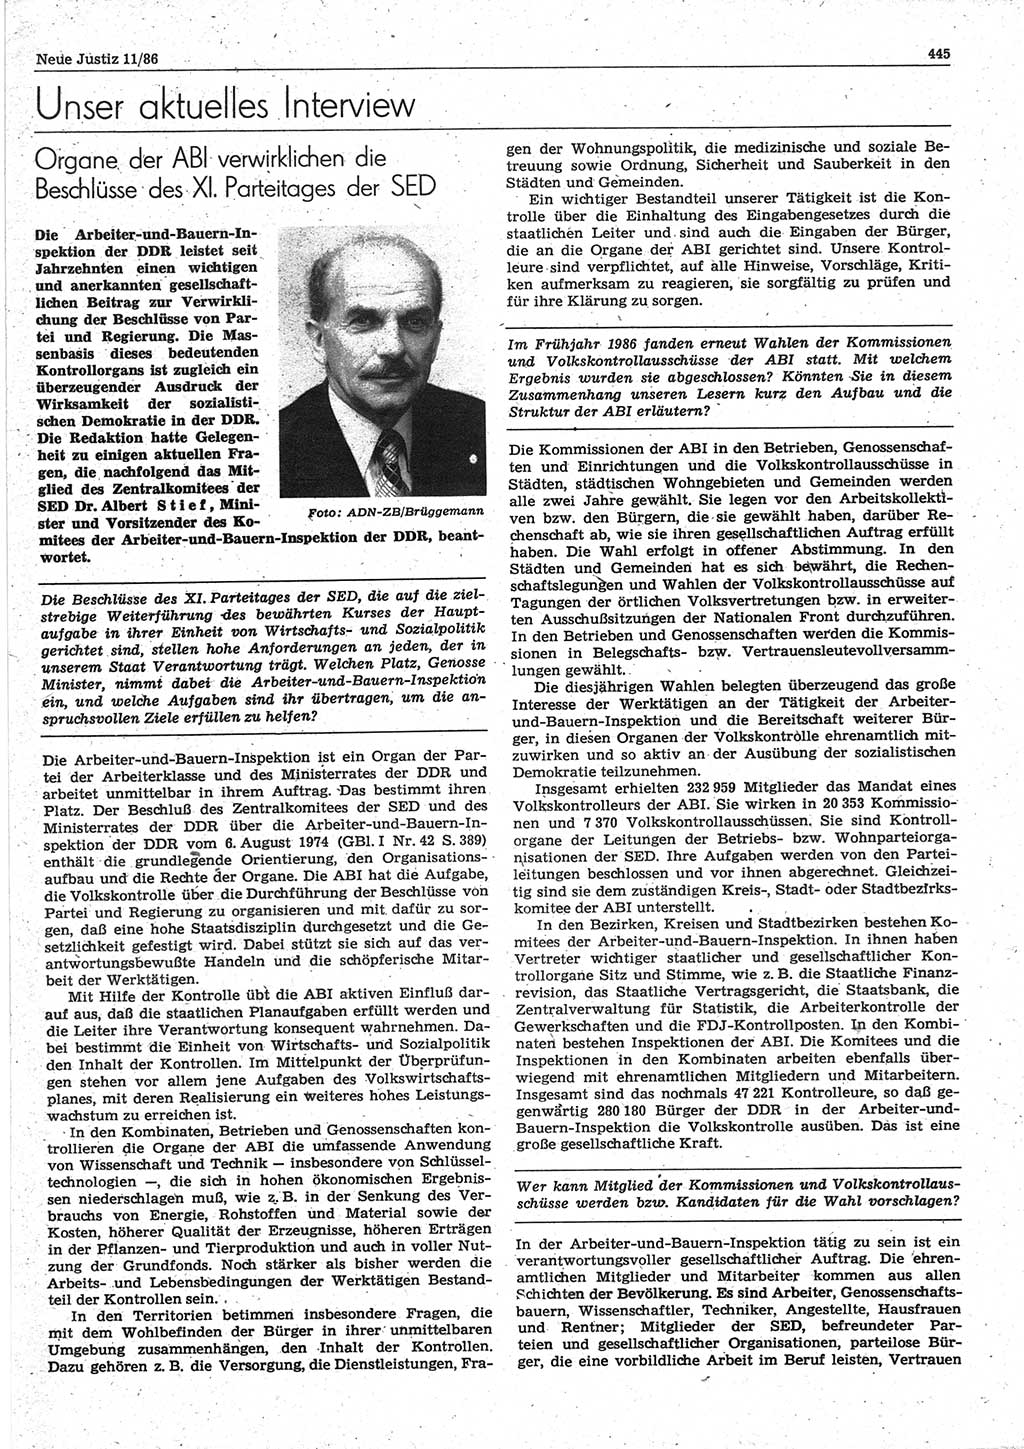 Neue Justiz (NJ), Zeitschrift für sozialistisches Recht und Gesetzlichkeit [Deutsche Demokratische Republik (DDR)], 40. Jahrgang 1986, Seite 445 (NJ DDR 1986, S. 445)